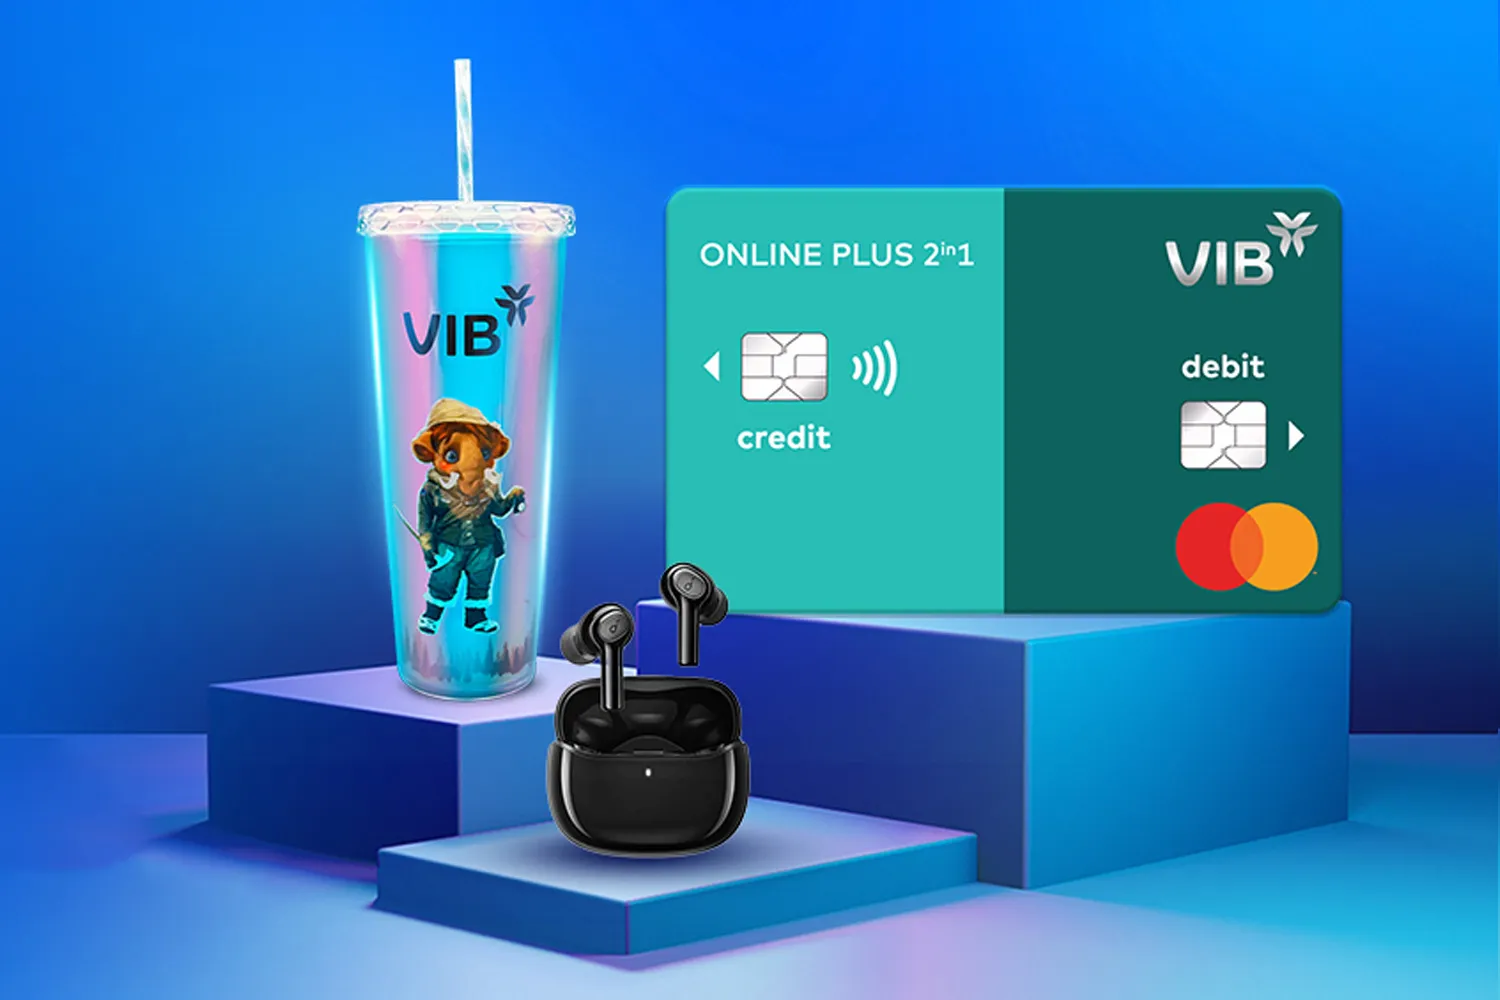 Mở thẻ tín dụng VIB để được miễn phí thường niên trọn đời